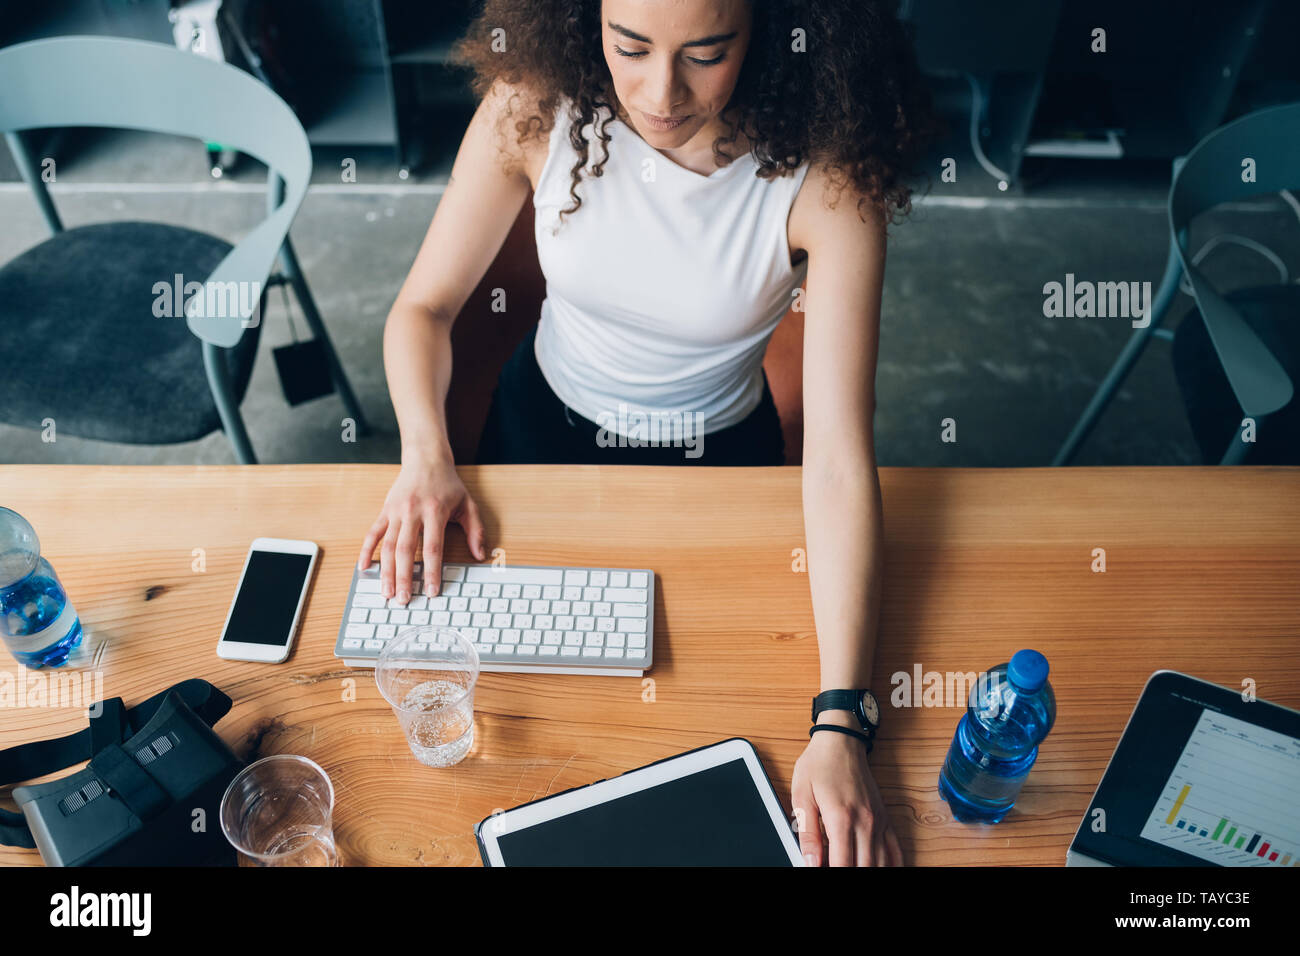 Junge brunette Geschäftsfrau in Coworking office - Emanzipation, Konzentration, neues Geschäft Stockfoto